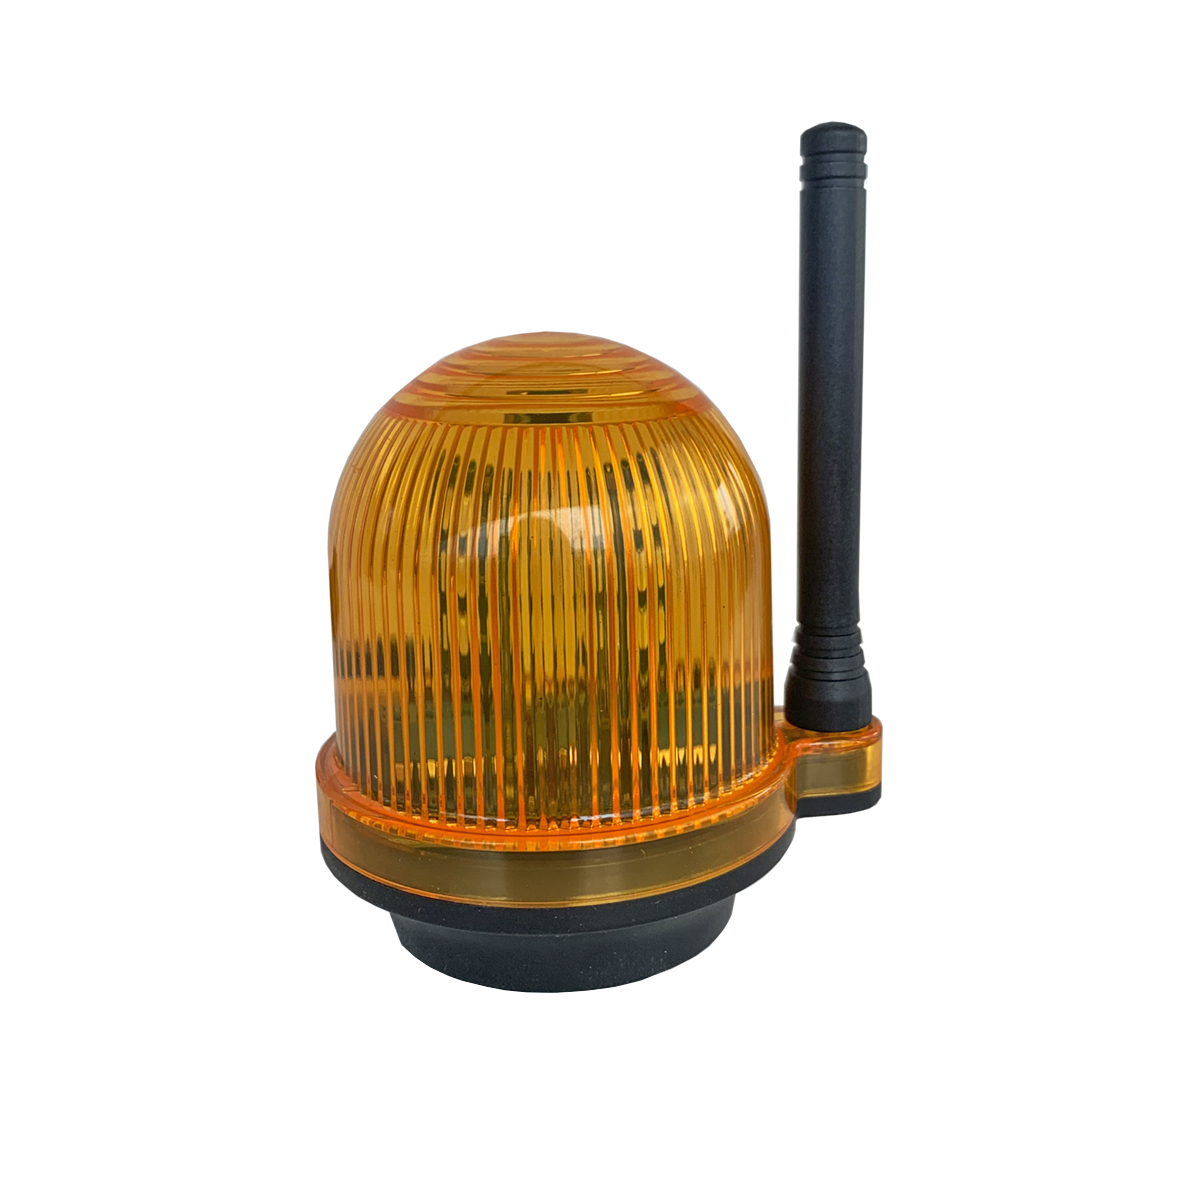 Сигнальная лампа с звуковым сигналом для промышленных объектов Nord Ice YS-111 dekraft лc 101 красная лампа led сигнальная на din рейку 1p 220в